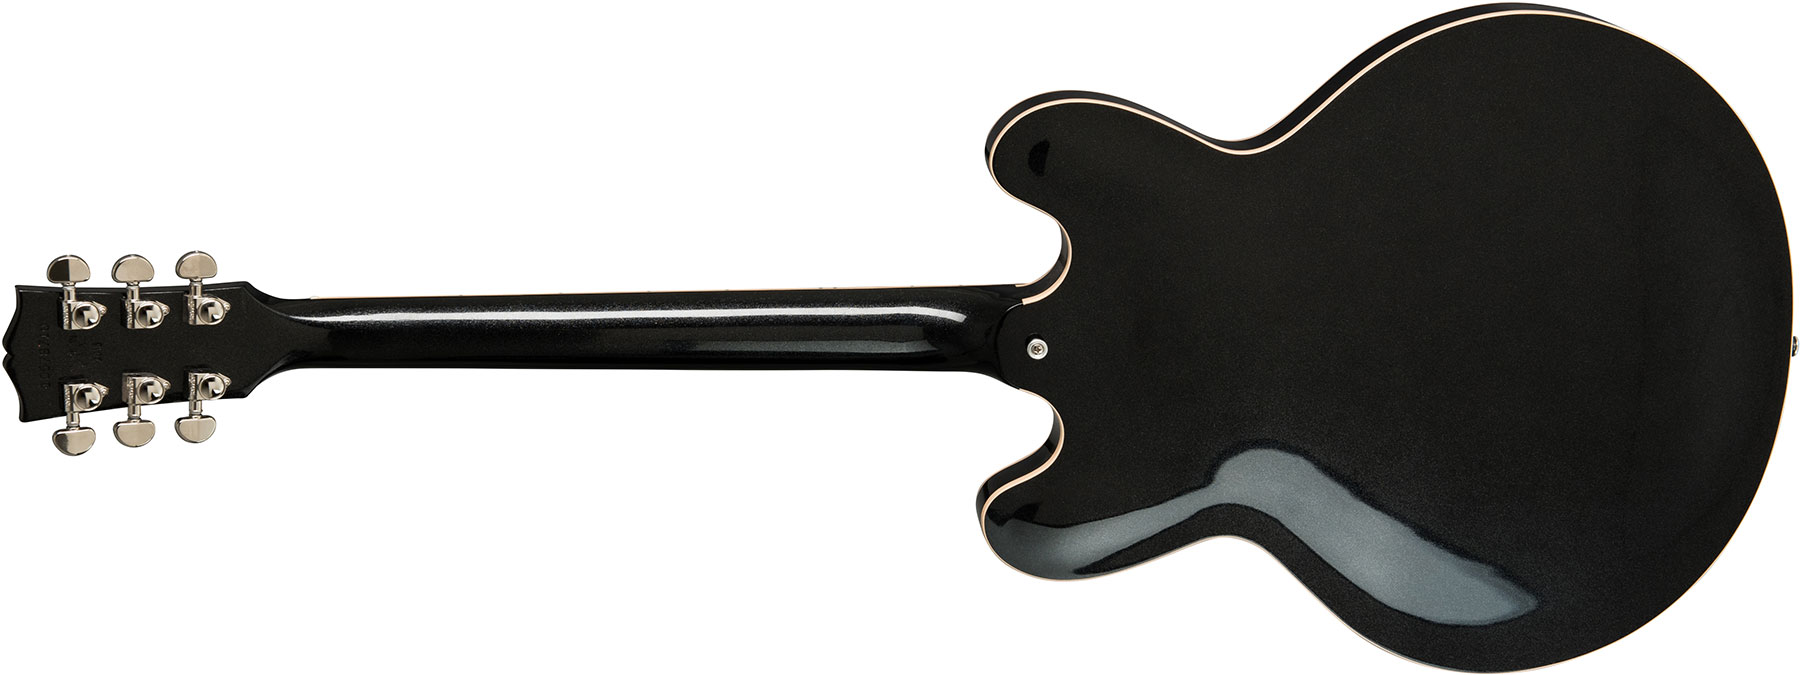 Gibson Es-335 Dot 2019 Hh Ht Rw - Graphite Metallic - Guitare Électrique 1/2 Caisse - Variation 2